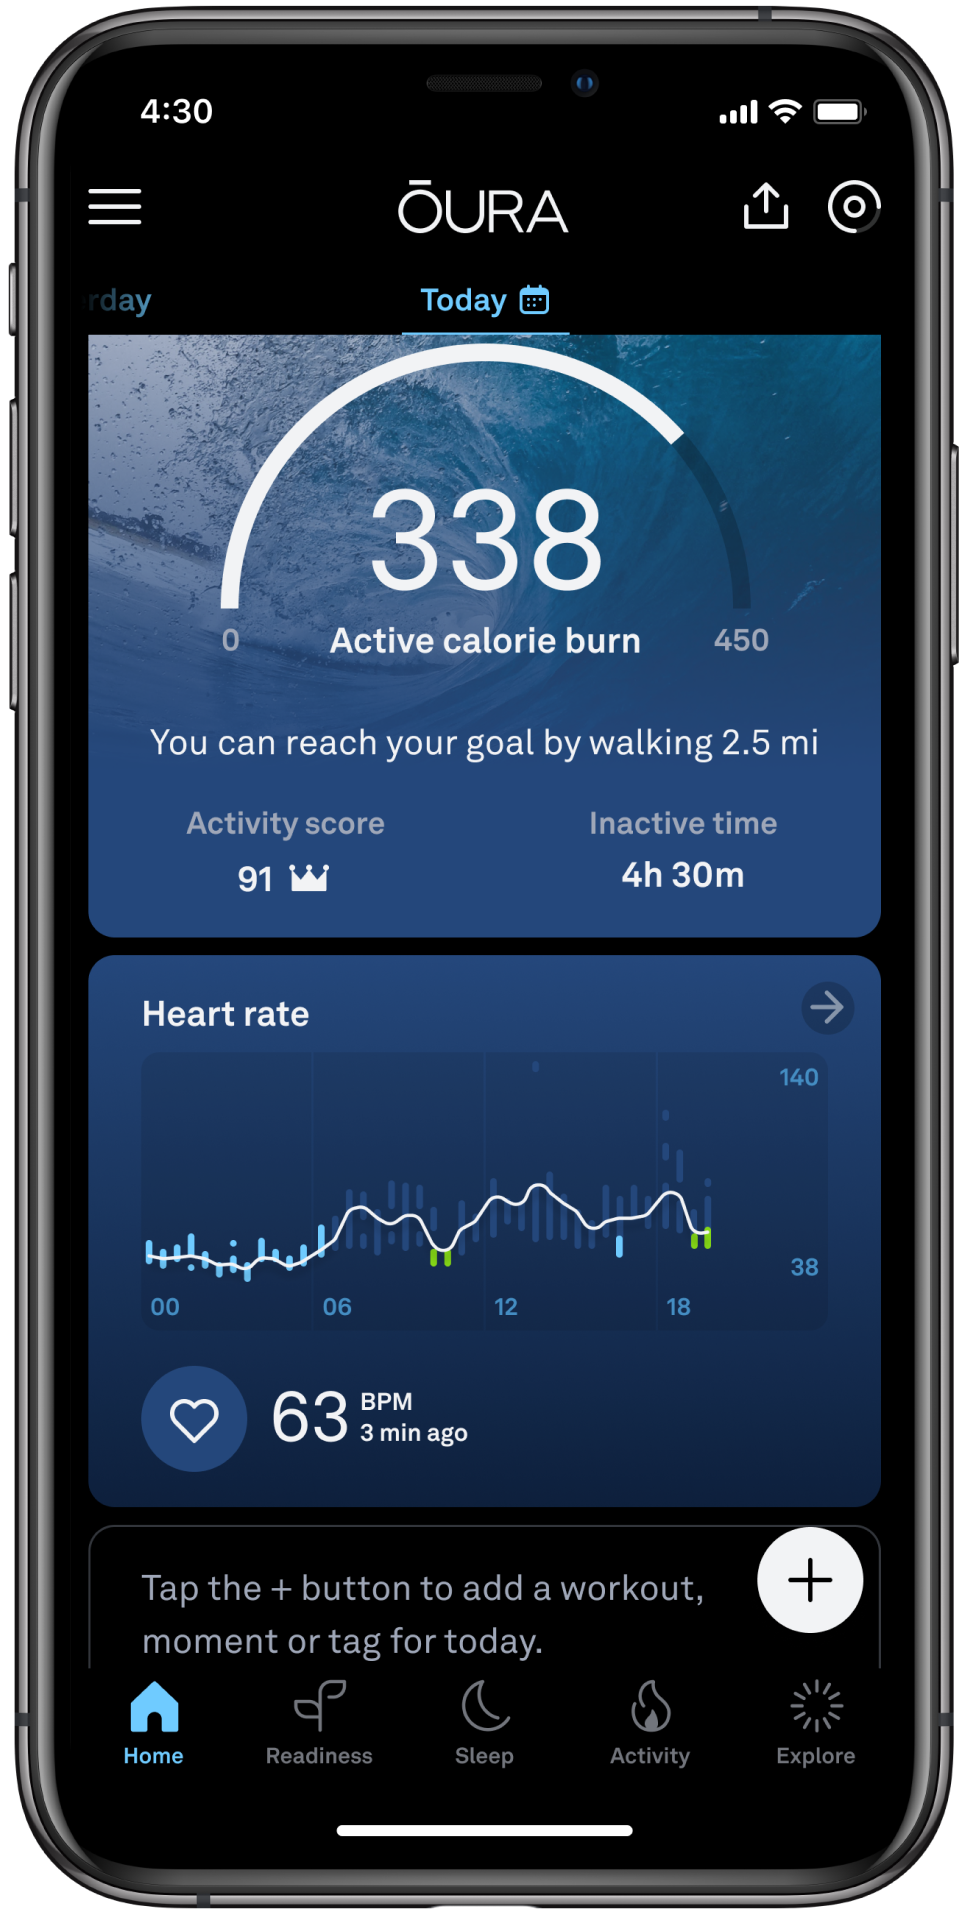 24時間心拍数グラフを表示するOuraアプリのホーム画面。 グラフには色分けされた複数の棒グラフがあり、青色は睡眠時心拍数、緑色は修復時間を表しています